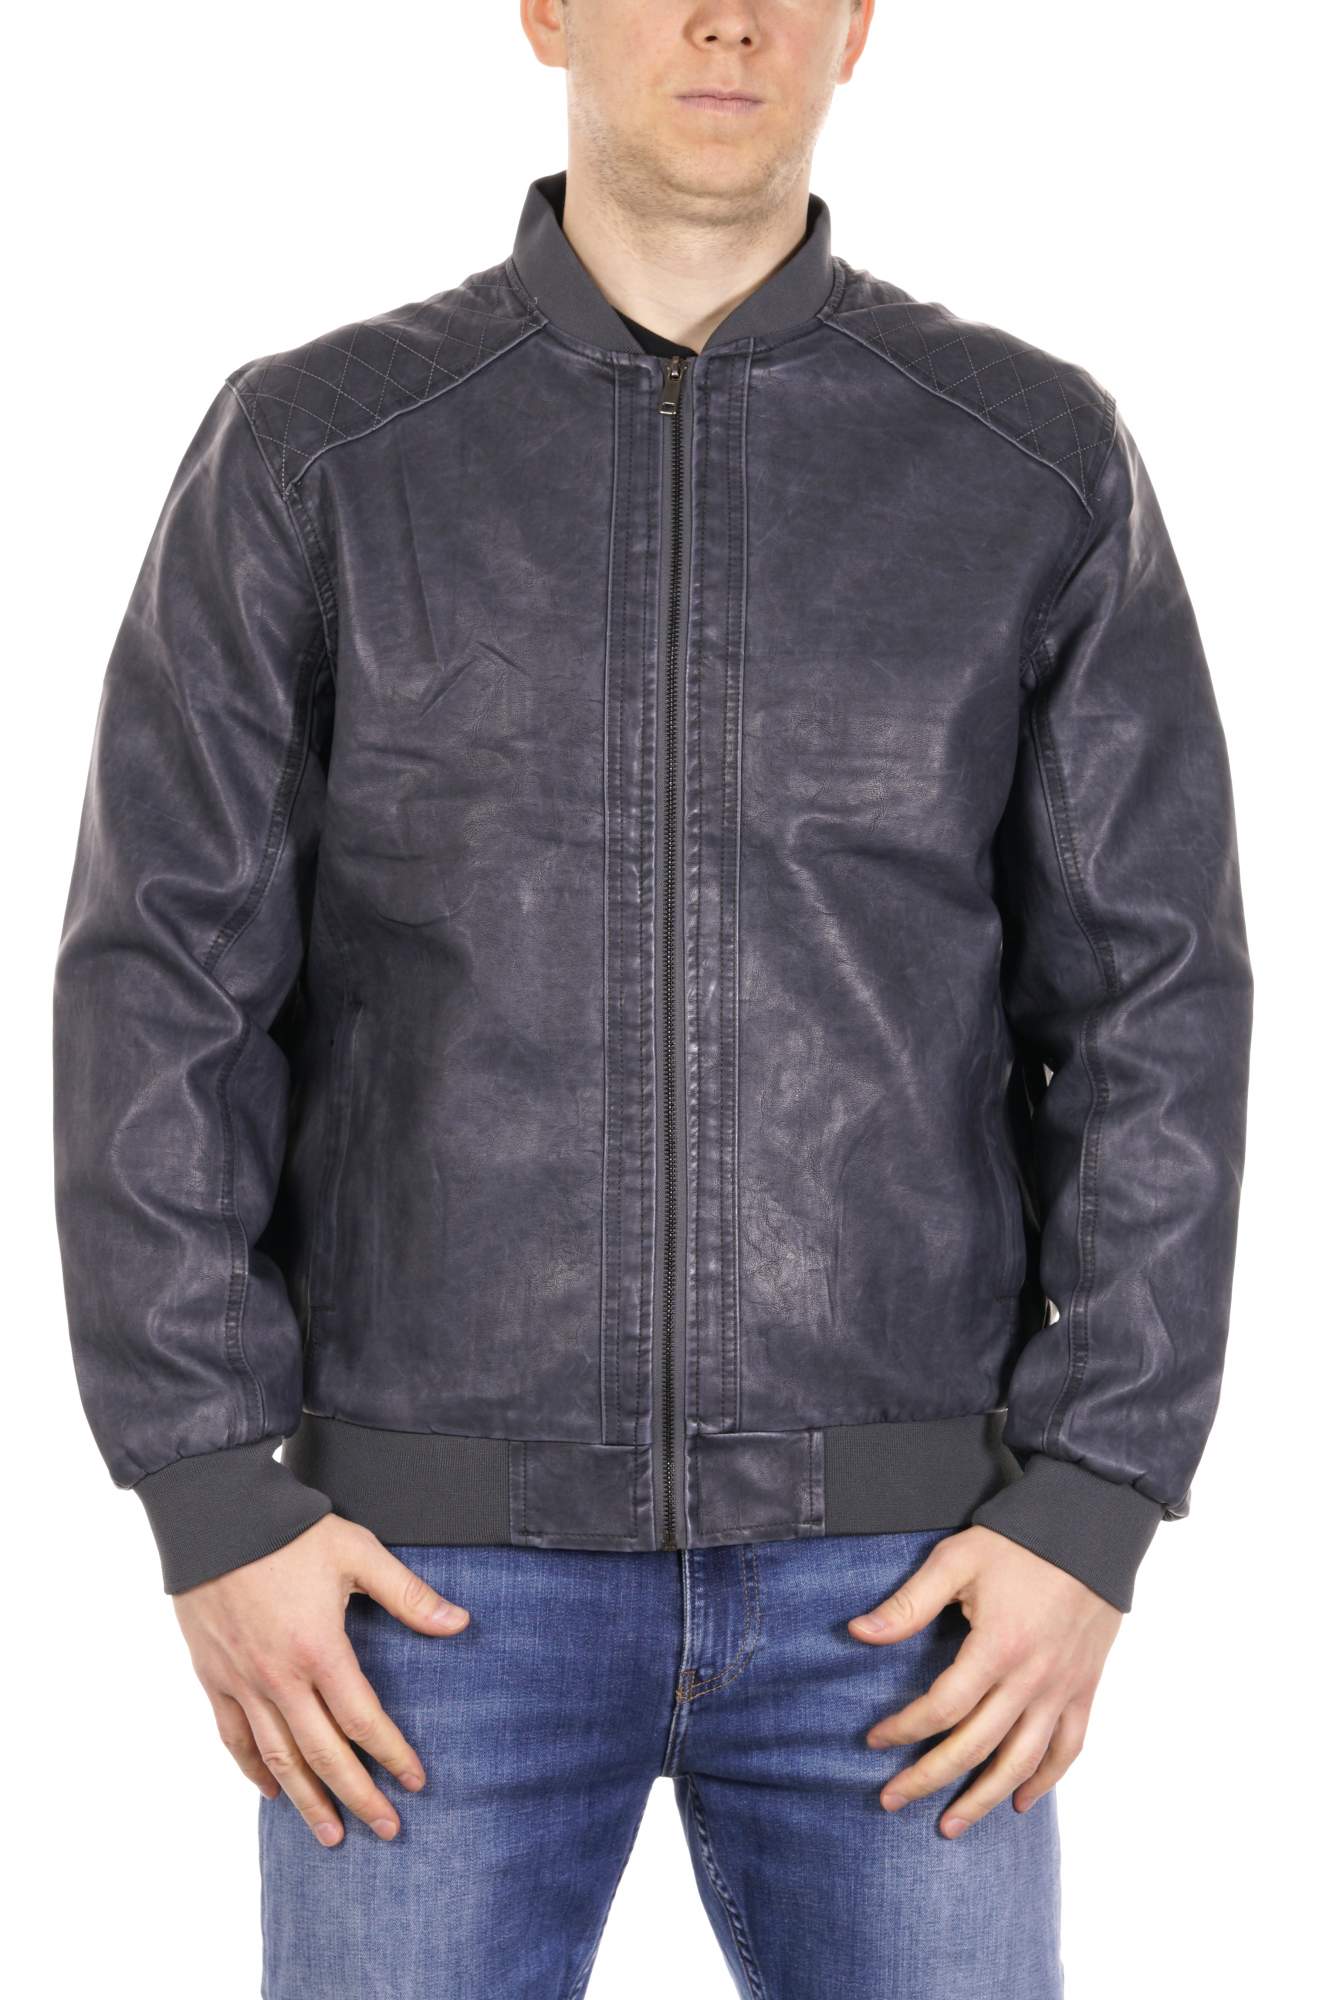 Кожаная куртка мужская PDONNA 8021857 синяя 52 RU – купить в Москве, цены в интернет-магазинах на Мегамаркет